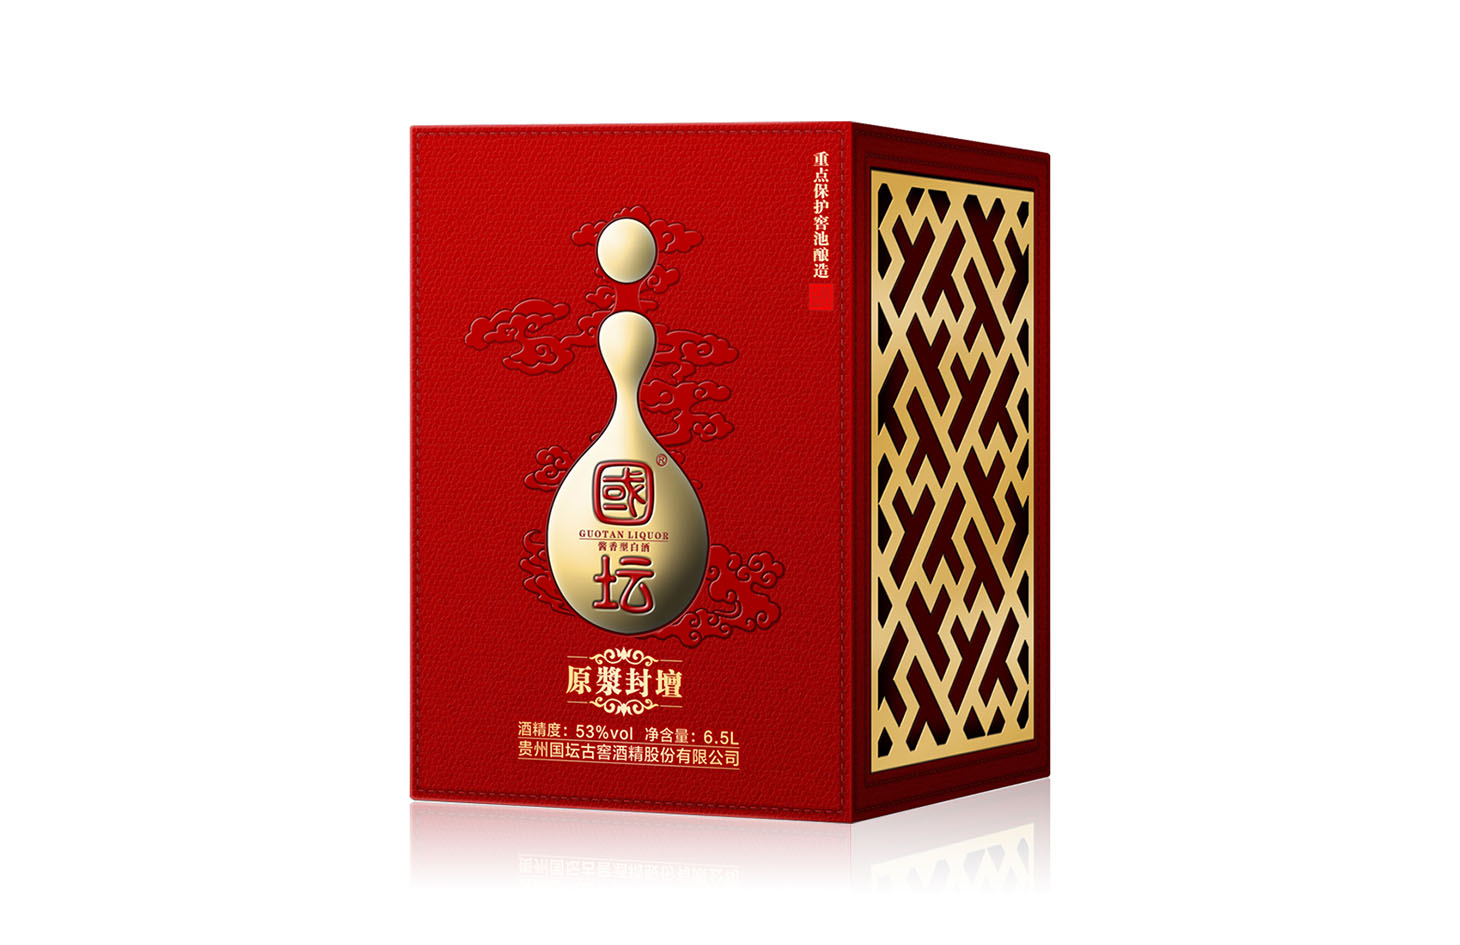 中国传统元素应用于包装盒设计的思路